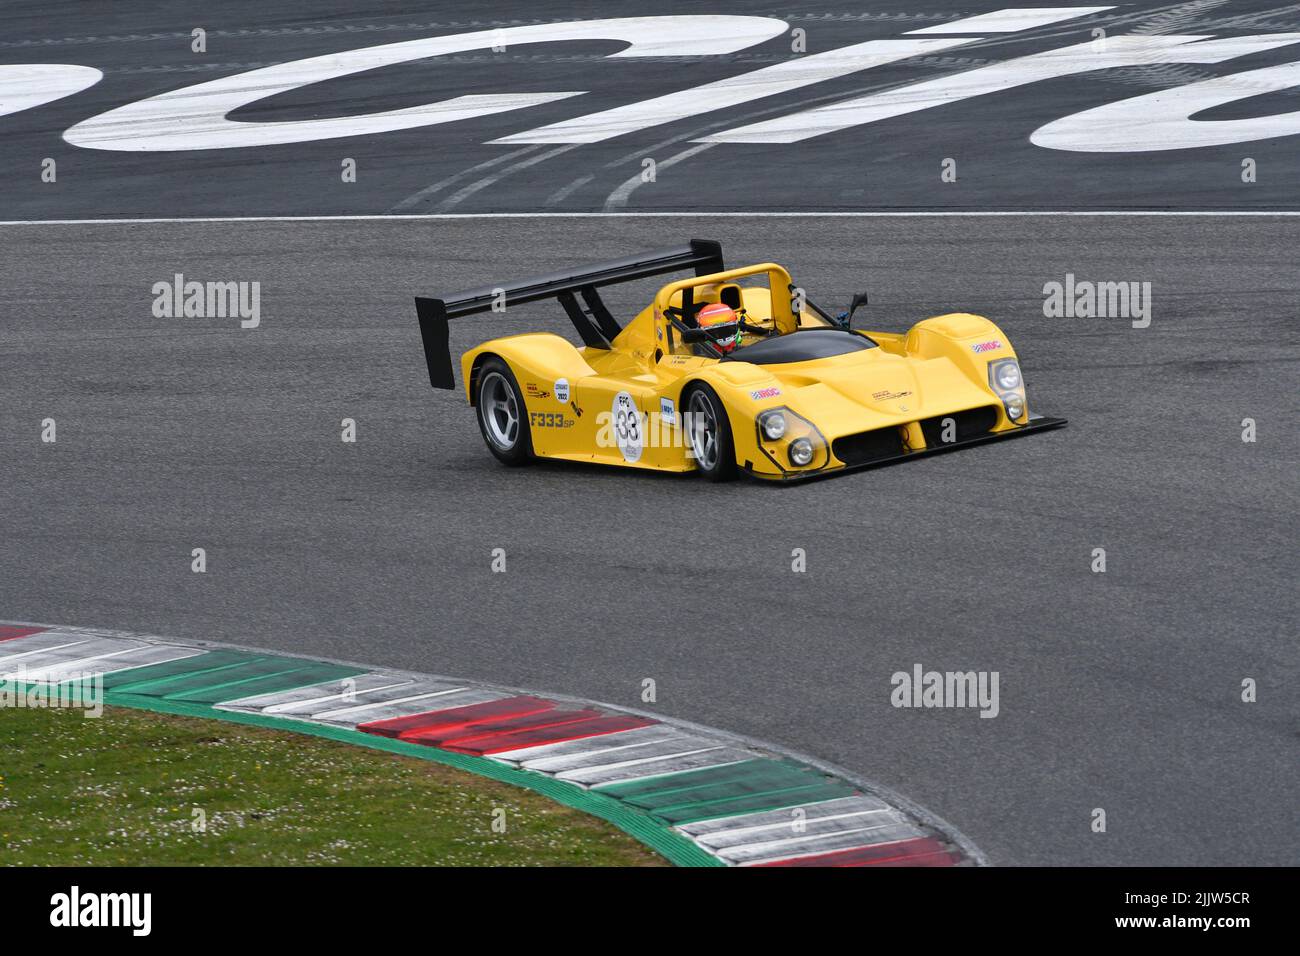 Scarperia, 3 April 2022: Ferrari 333 SP in action during Mugello Classic 2022 at Mugello Circuit in Italy. Stock Photo